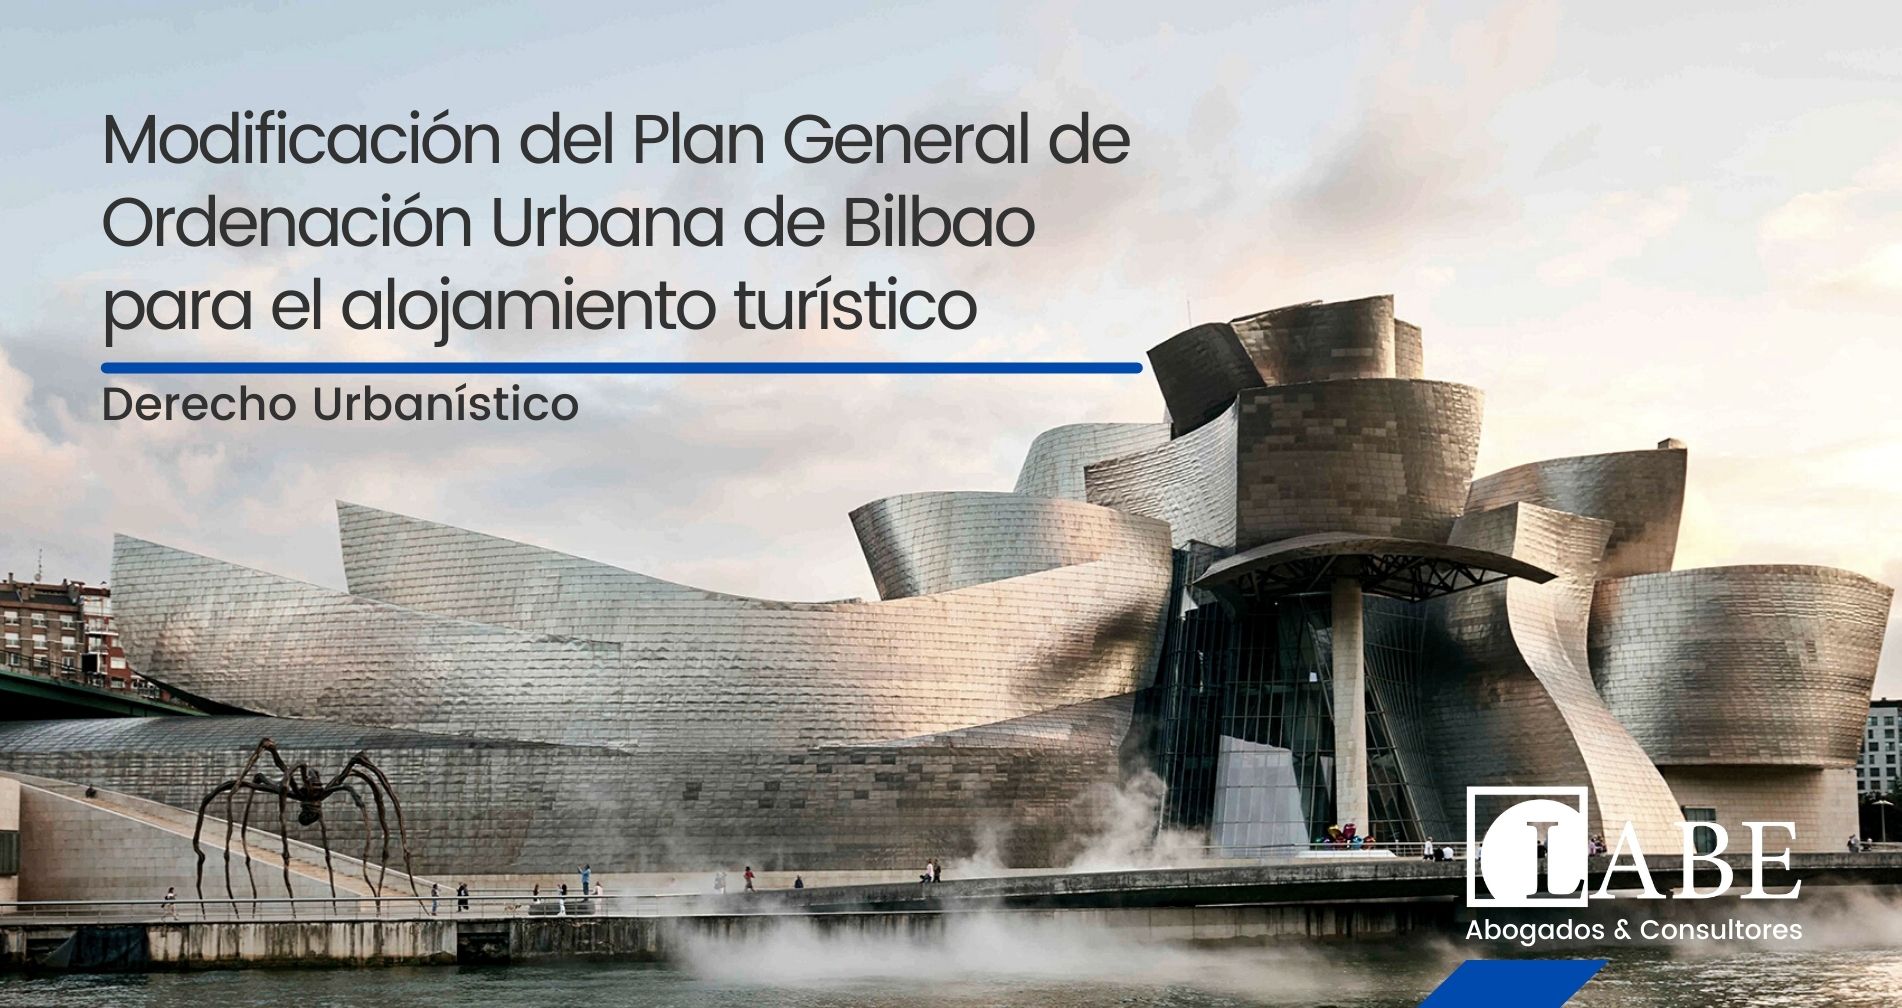 El Tribunal Supremo avala la modificación pormenorizada del Plan General de Ordenación Urbana de Bilbao en relación con el uso de alojamiento turístico